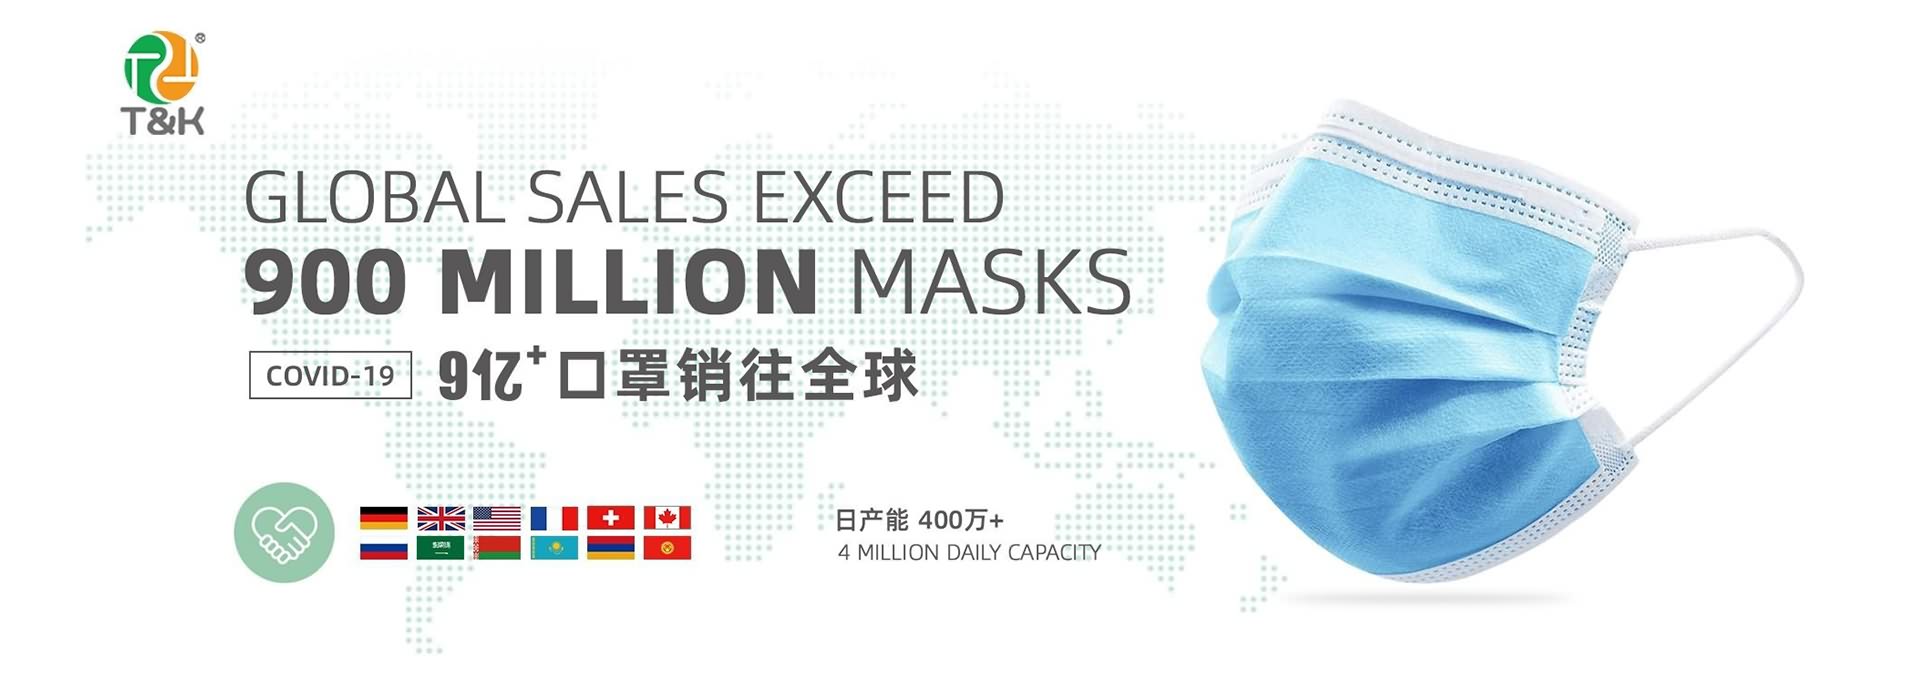 Produce quality Medical Masks, Medical Surgical Masks, FFP2/KN95/KF94 Protective Masks